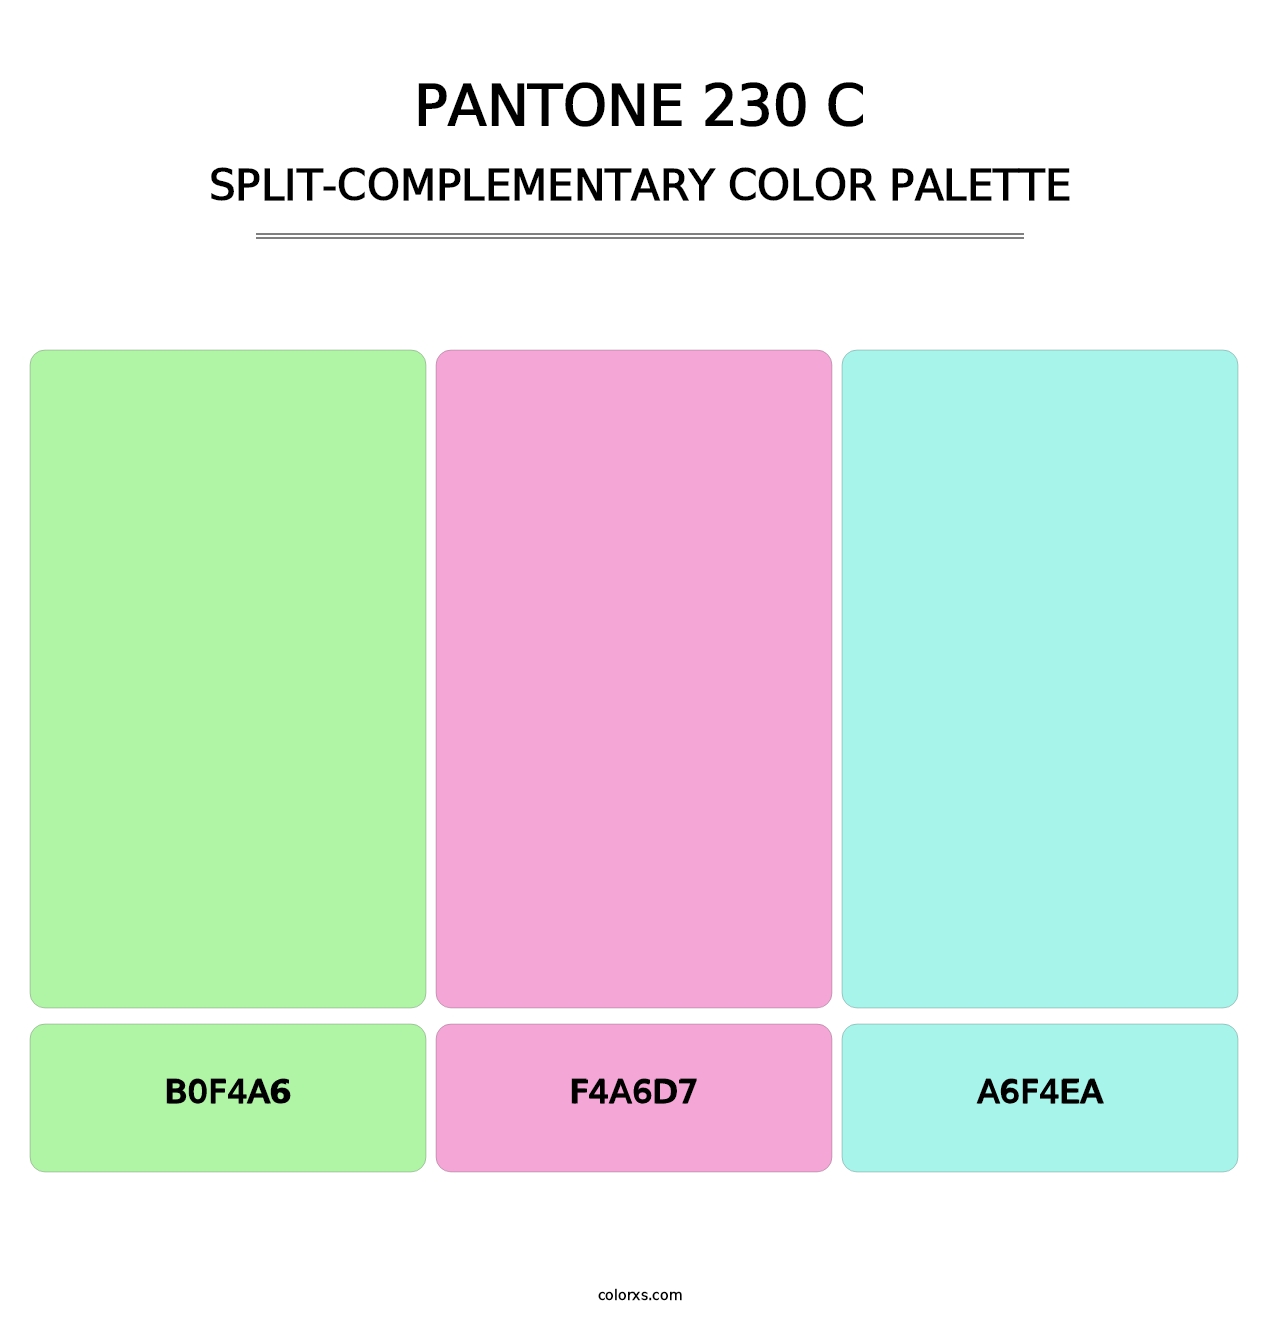 PANTONE 230 C - Split-Complementary Color Palette